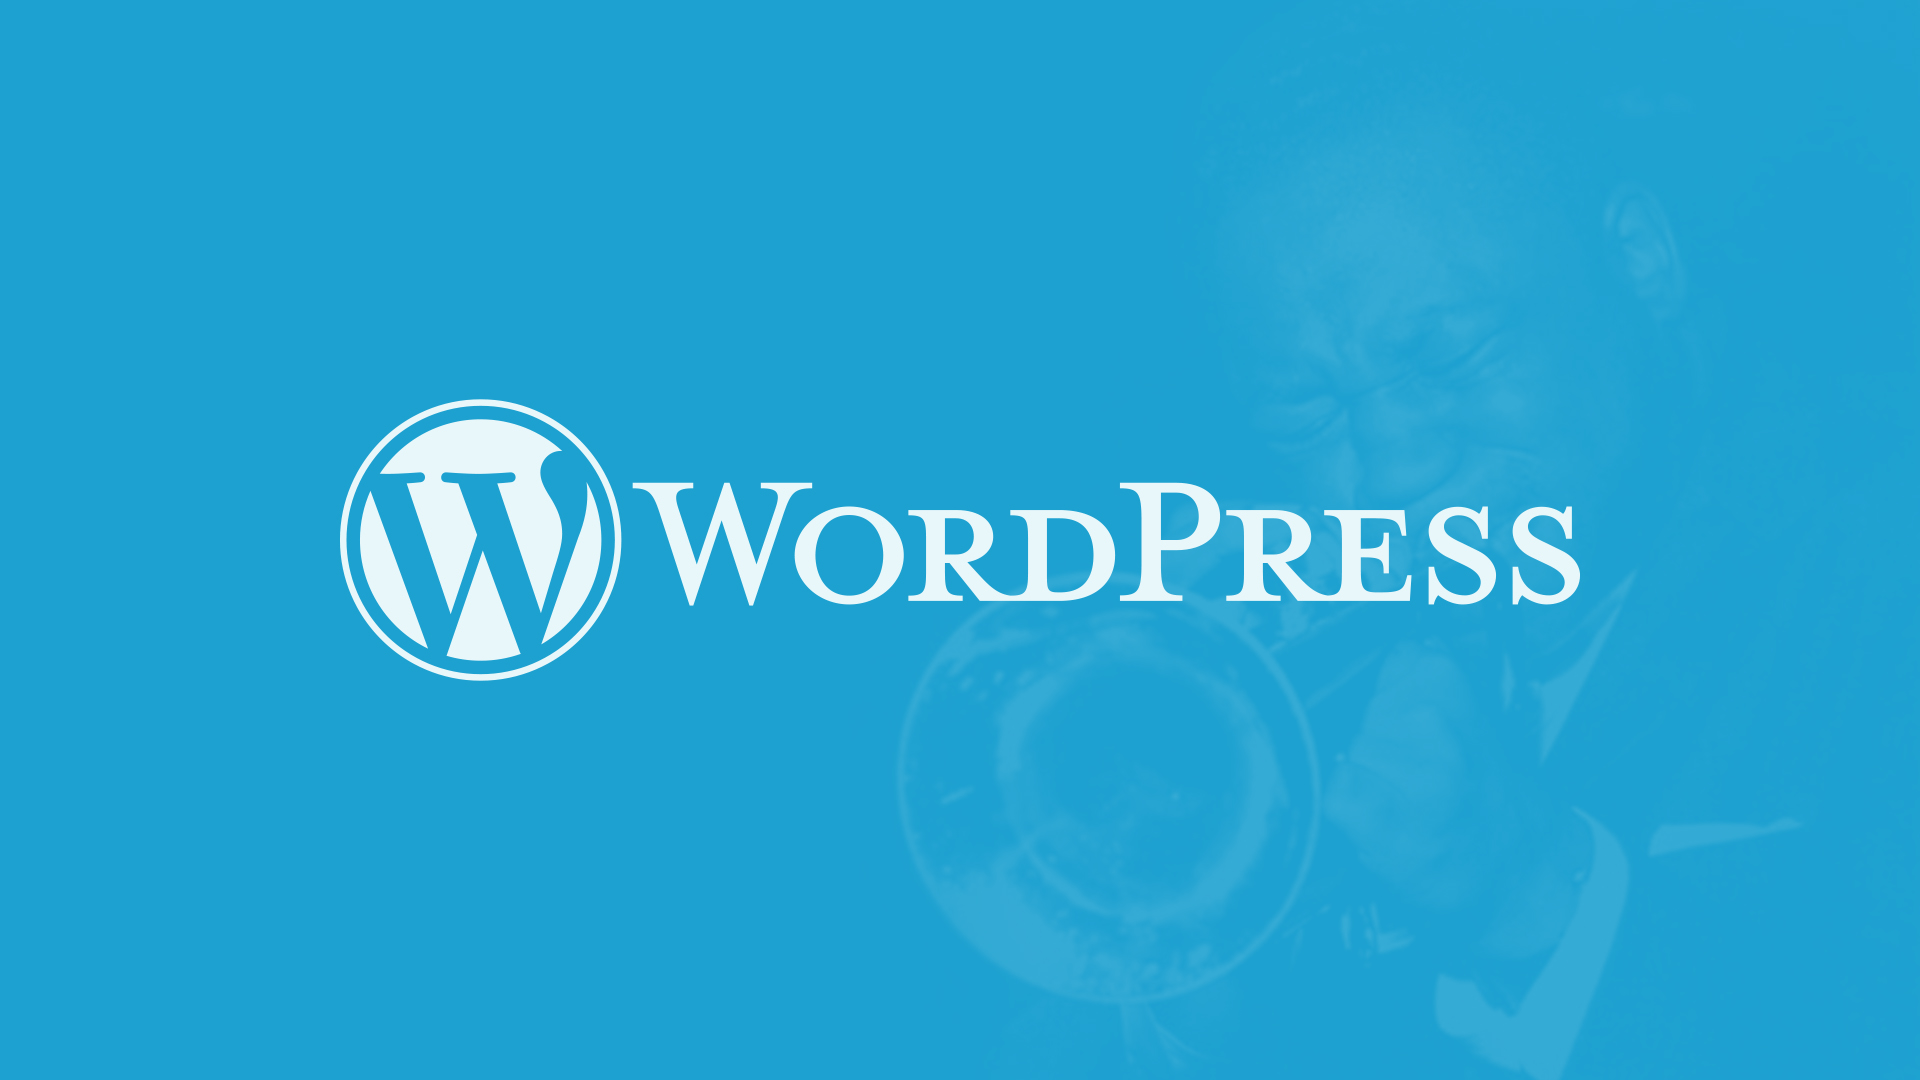 Wordpress update 4.4